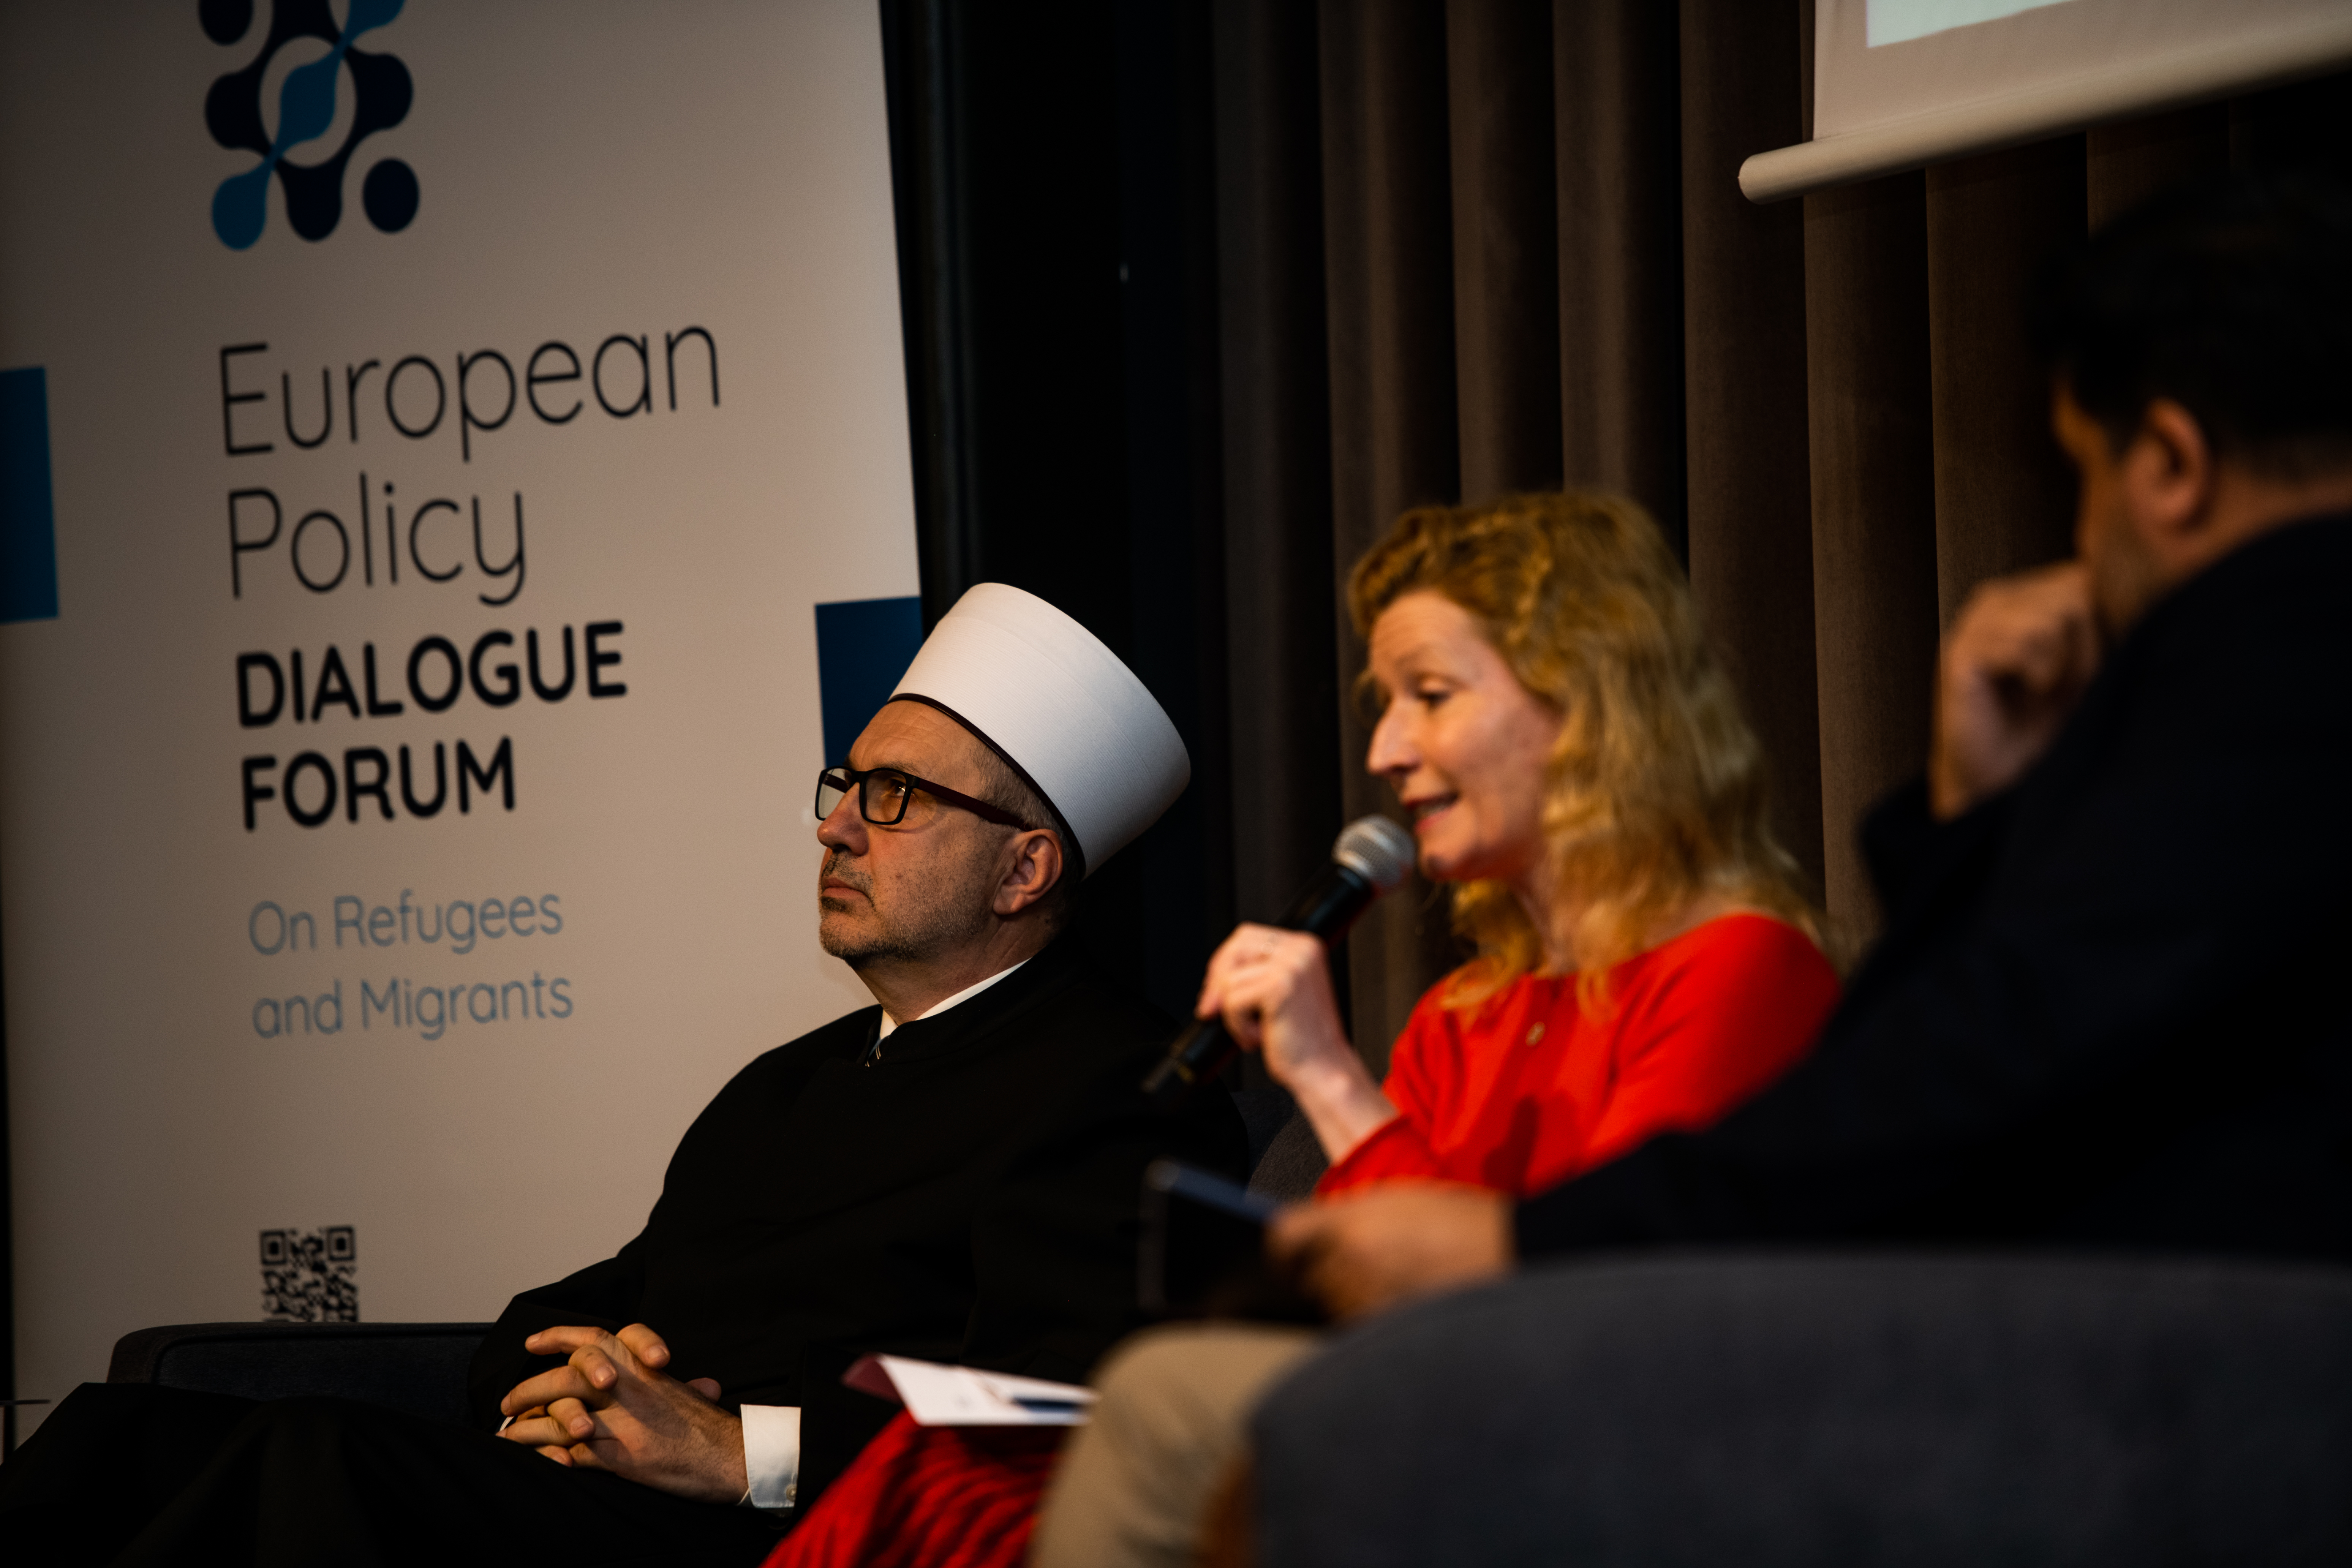 European Policy Dialogue Forum